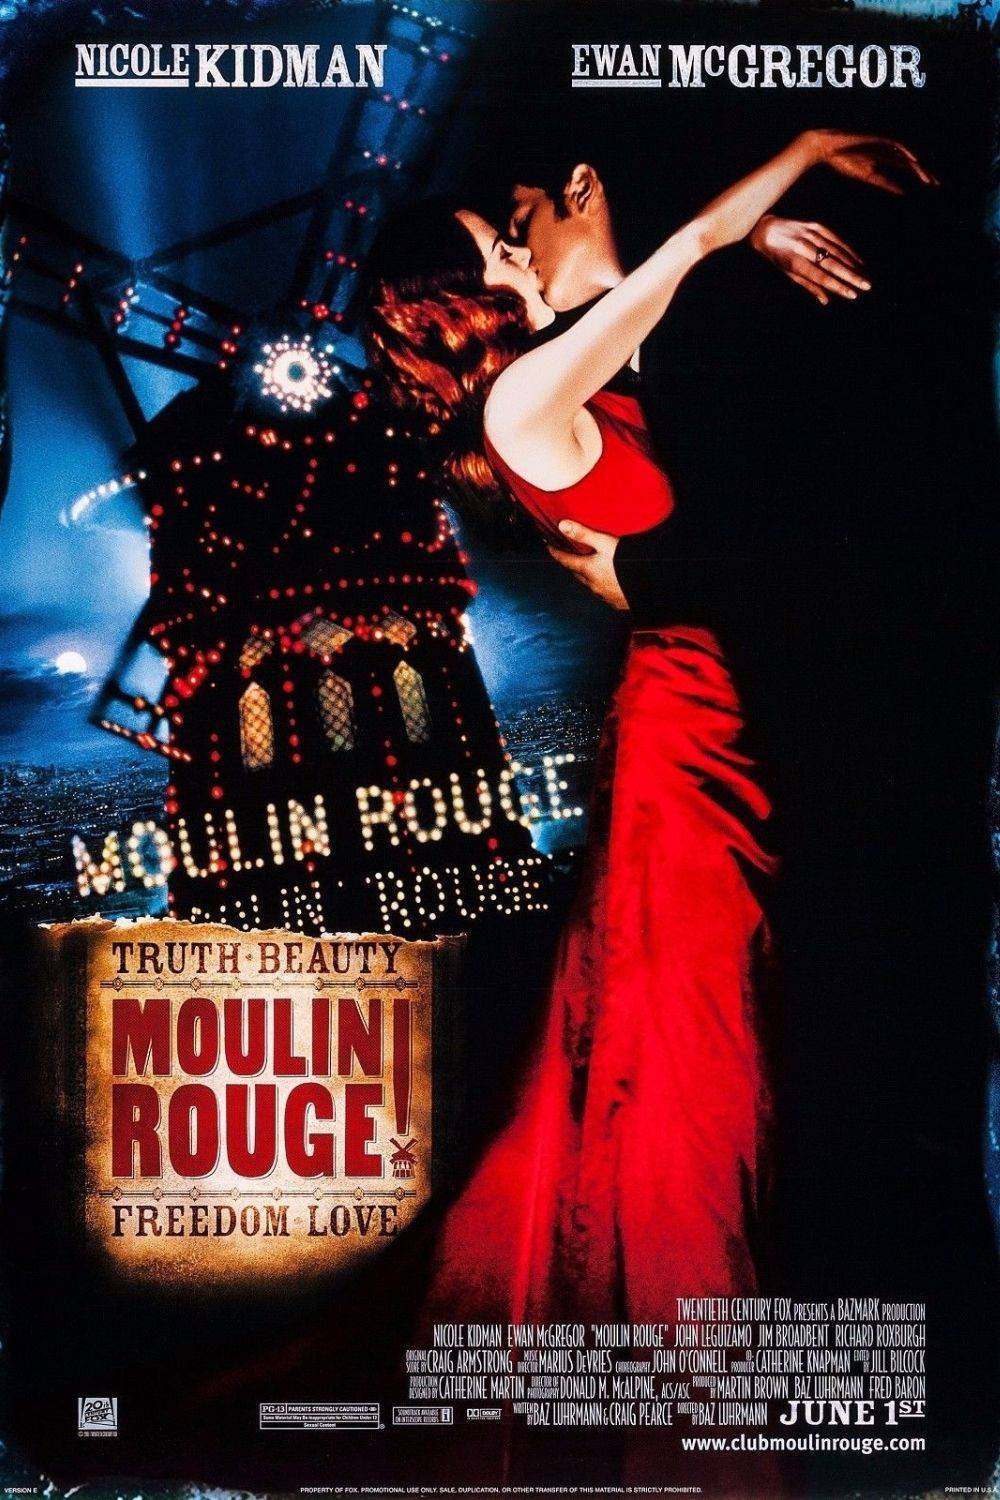 Película de amor y drama - Moulin Rouge (2001)